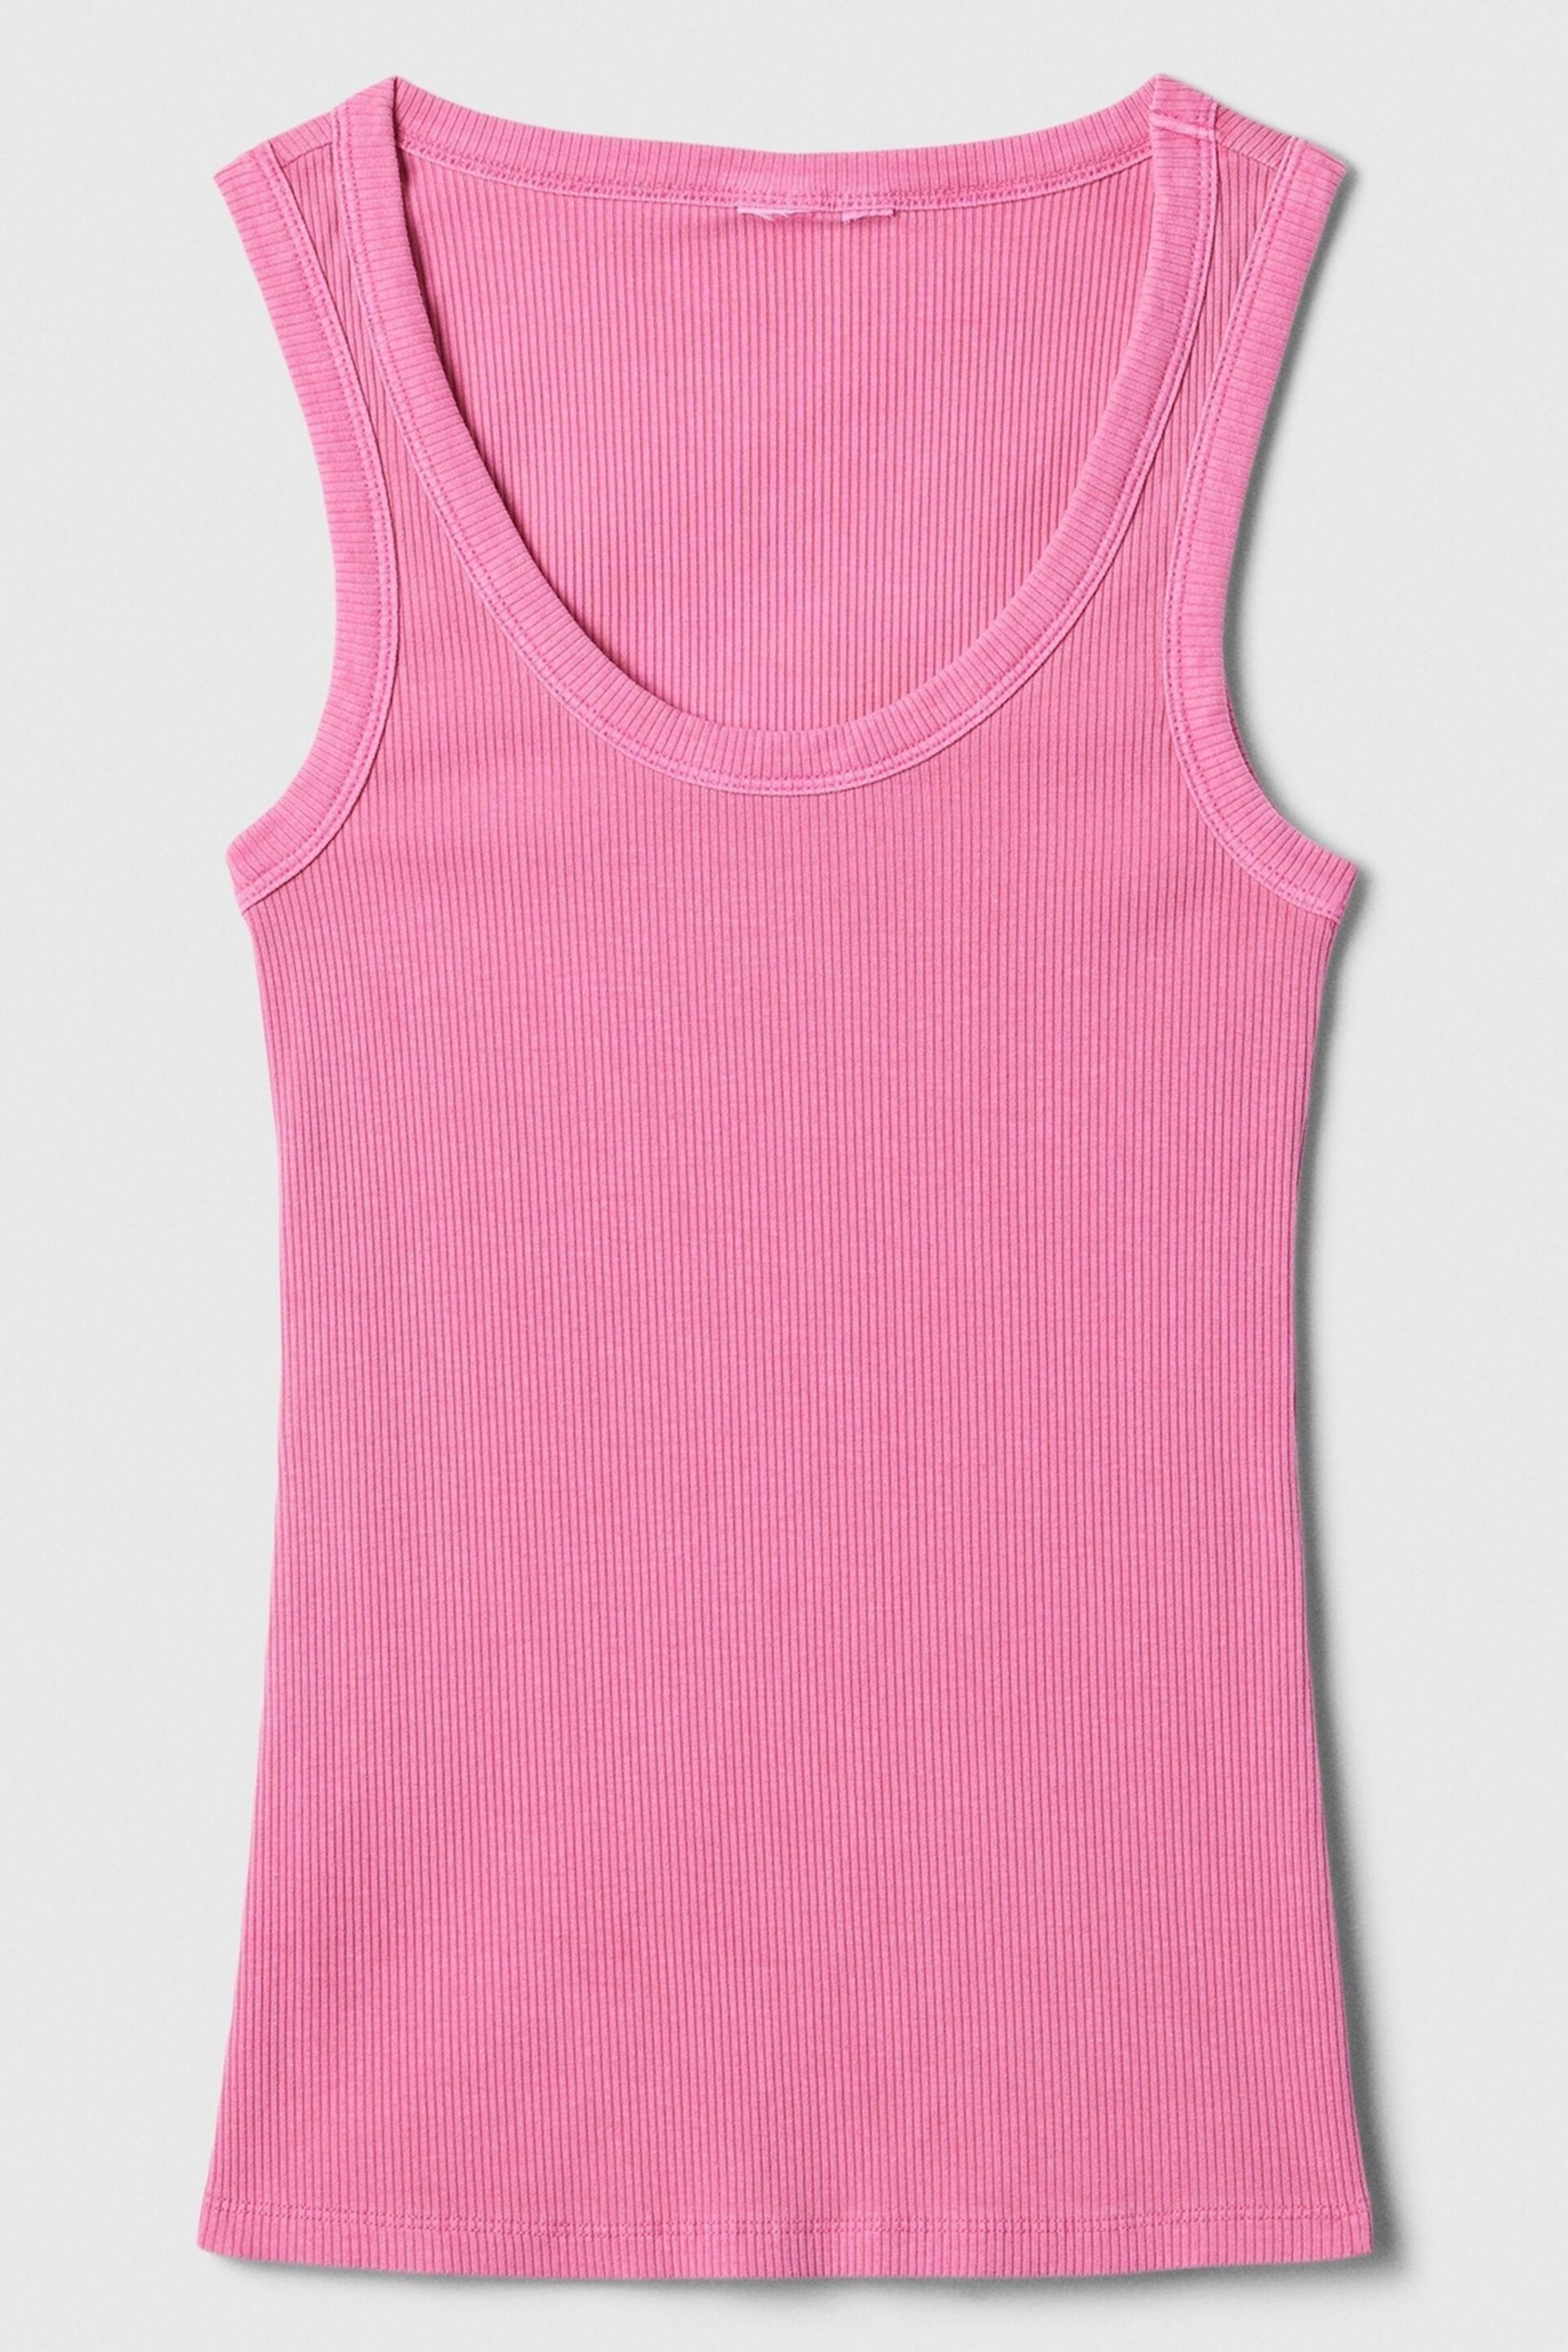 Gap Pink Soft Ribbed Vest Top - Image 5 of 5